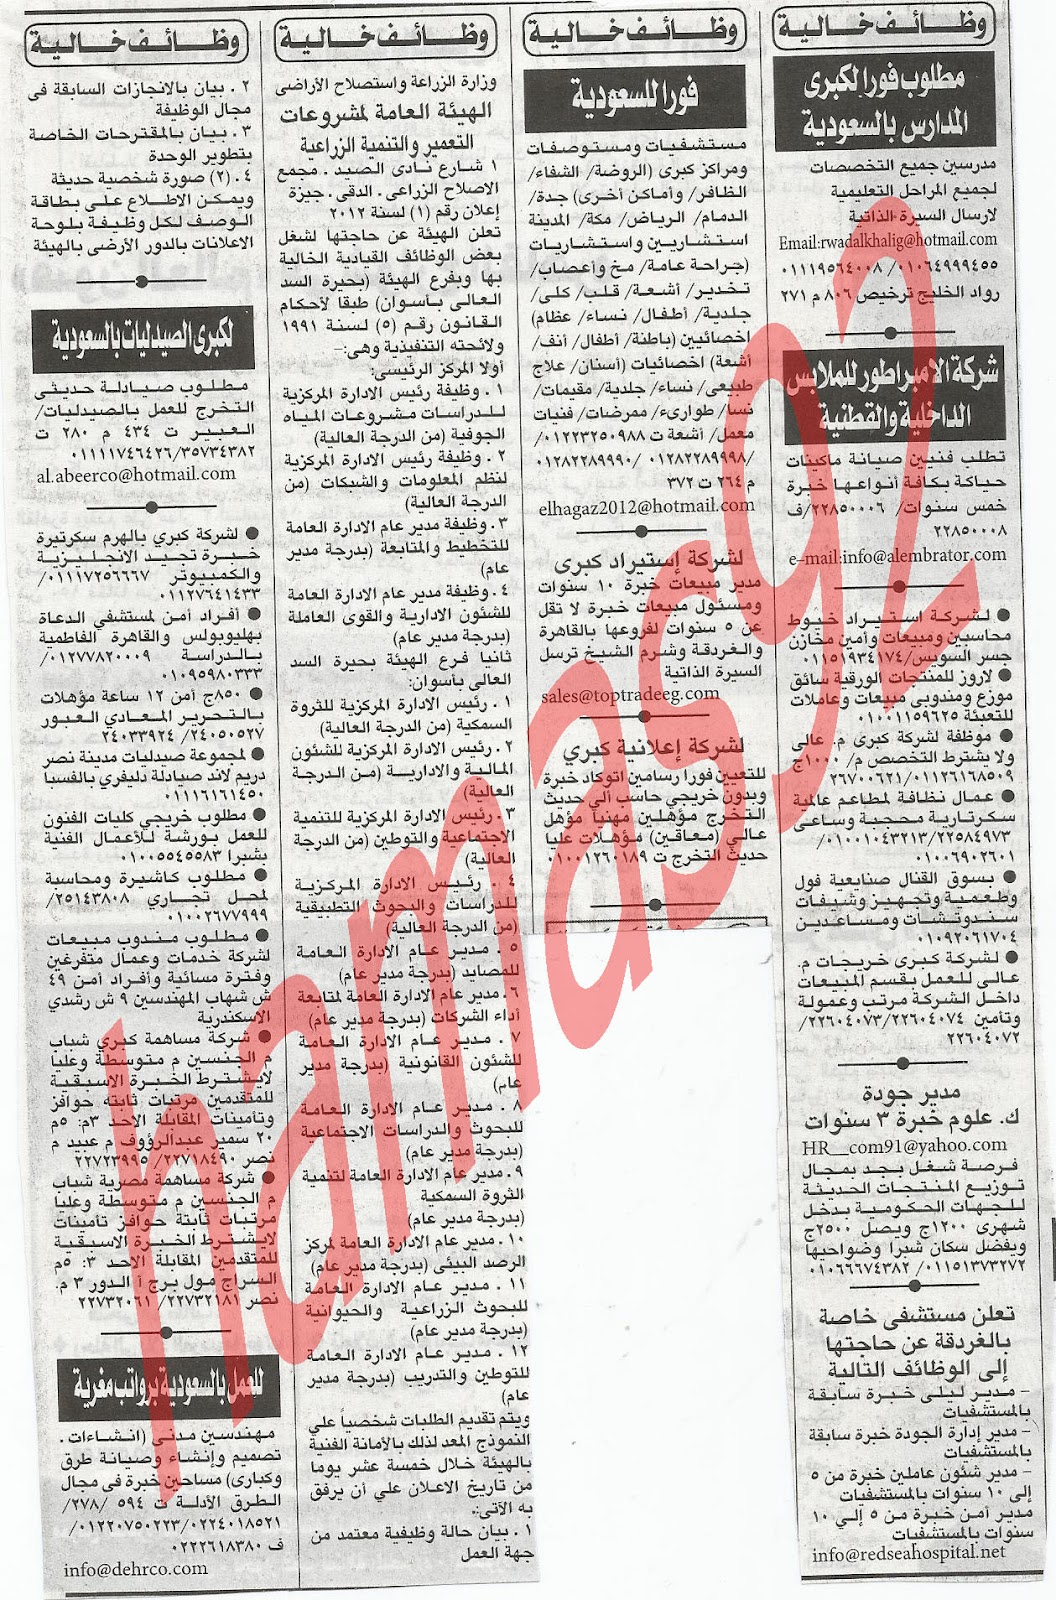 وظائف جريدة اهرام الجمعة 30 مارس 2012 , الجزء الاول 9